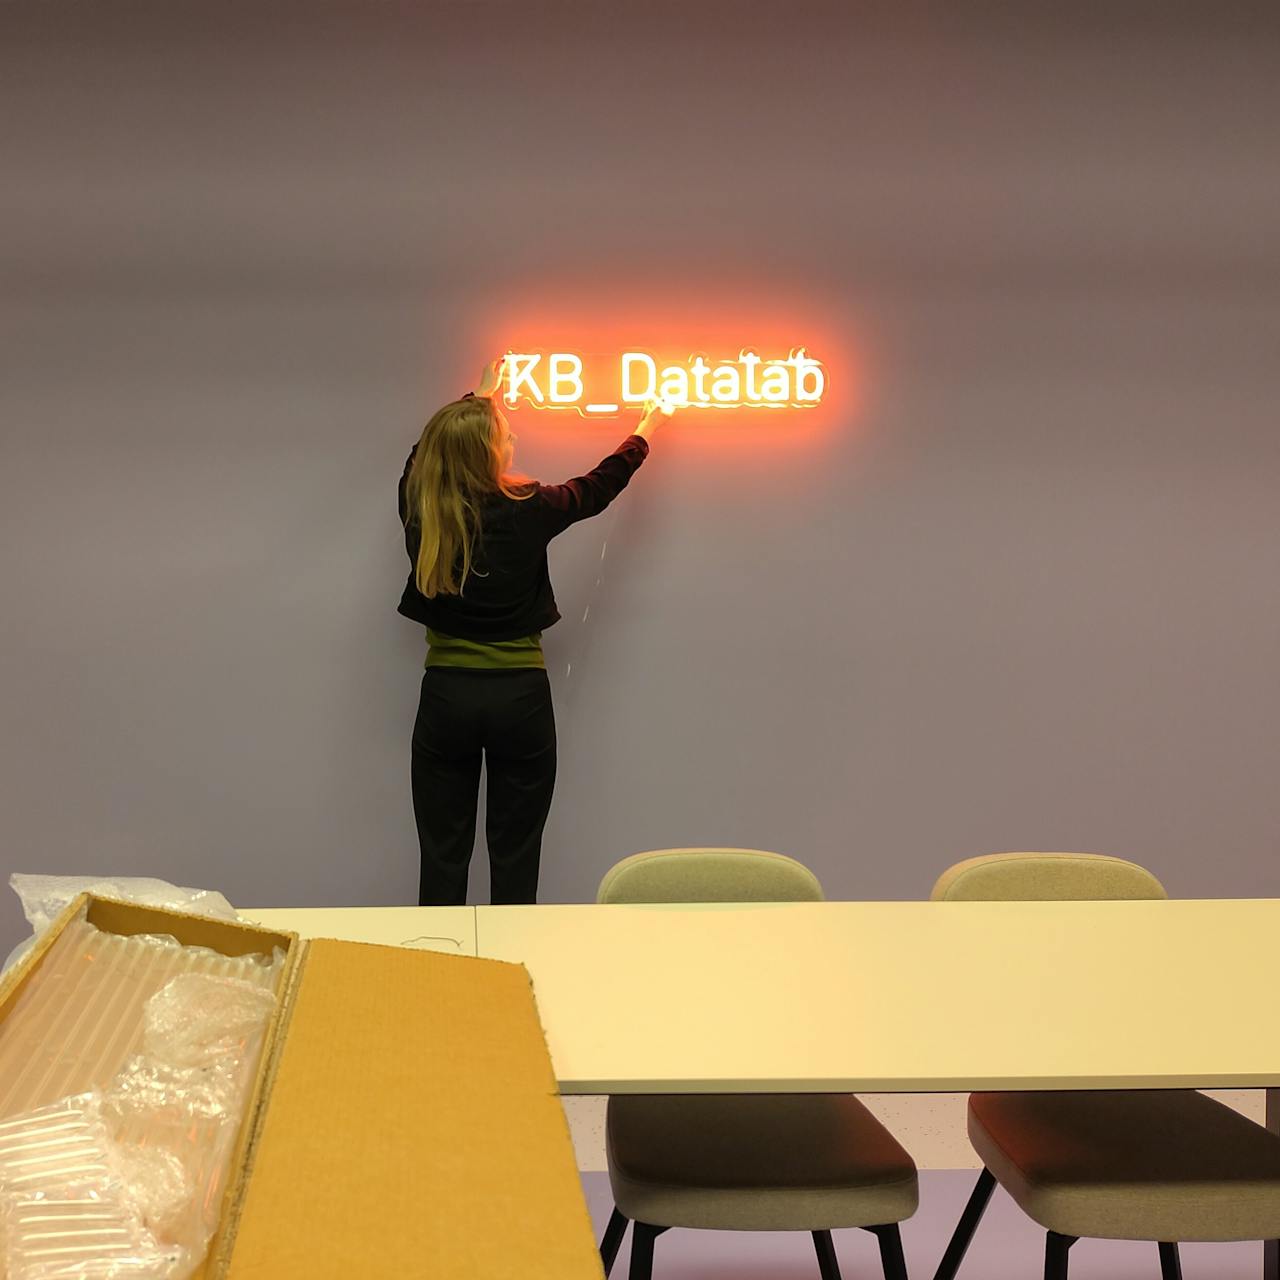 Een vrouw hangt het logo van het KB-Datalab in lichtgevende neonletters aan de muur.